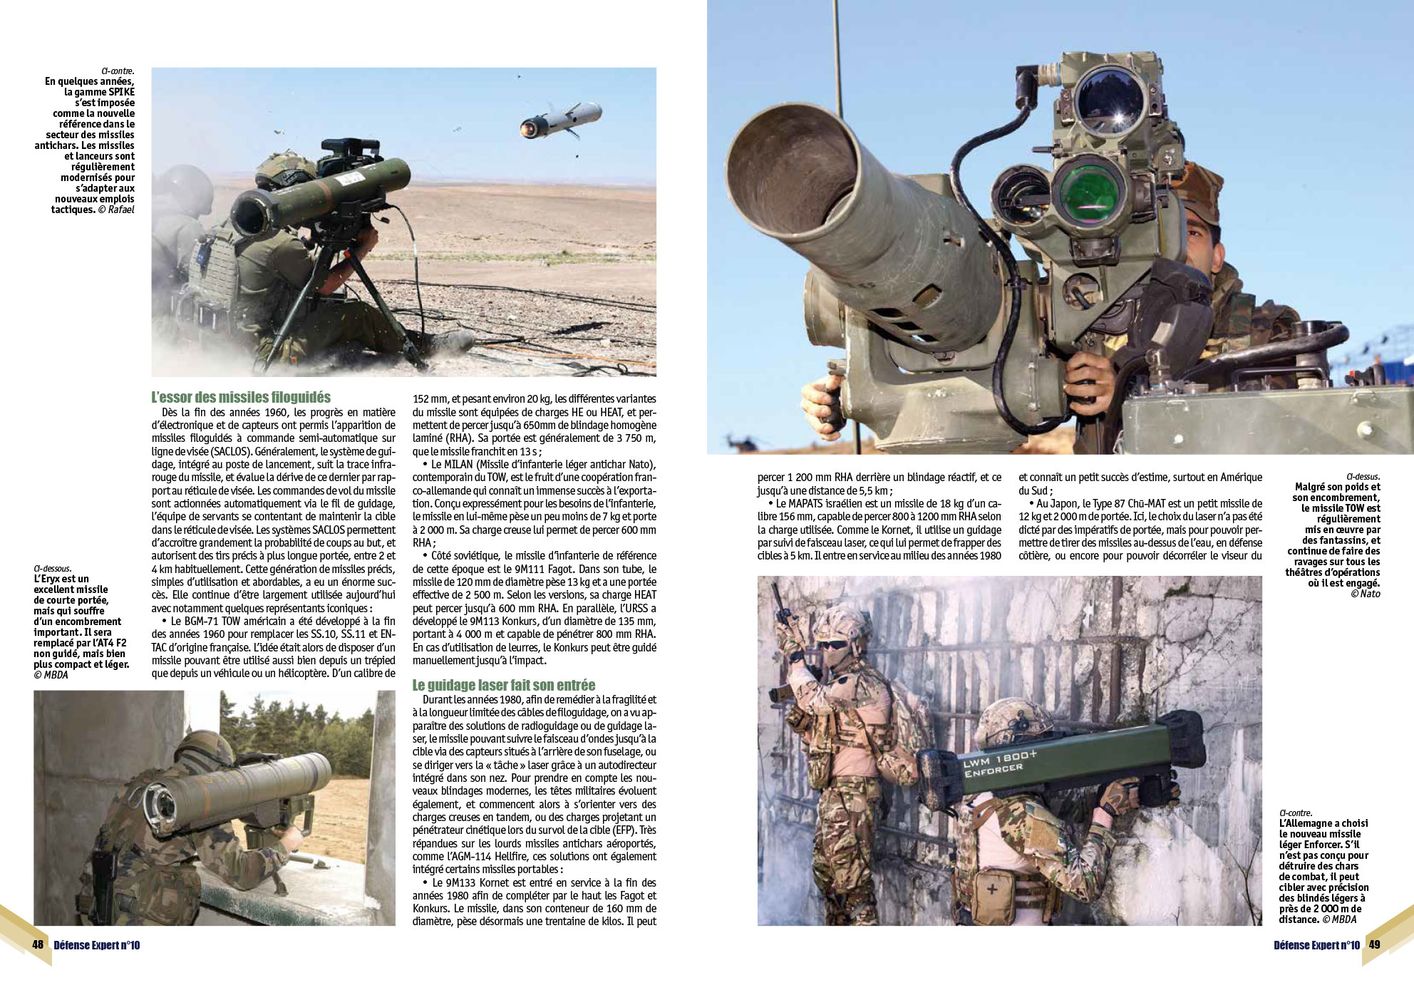 Missiles antichars, le multiplicateur de force de l’infanterie - page 48 & 49 DE n°10